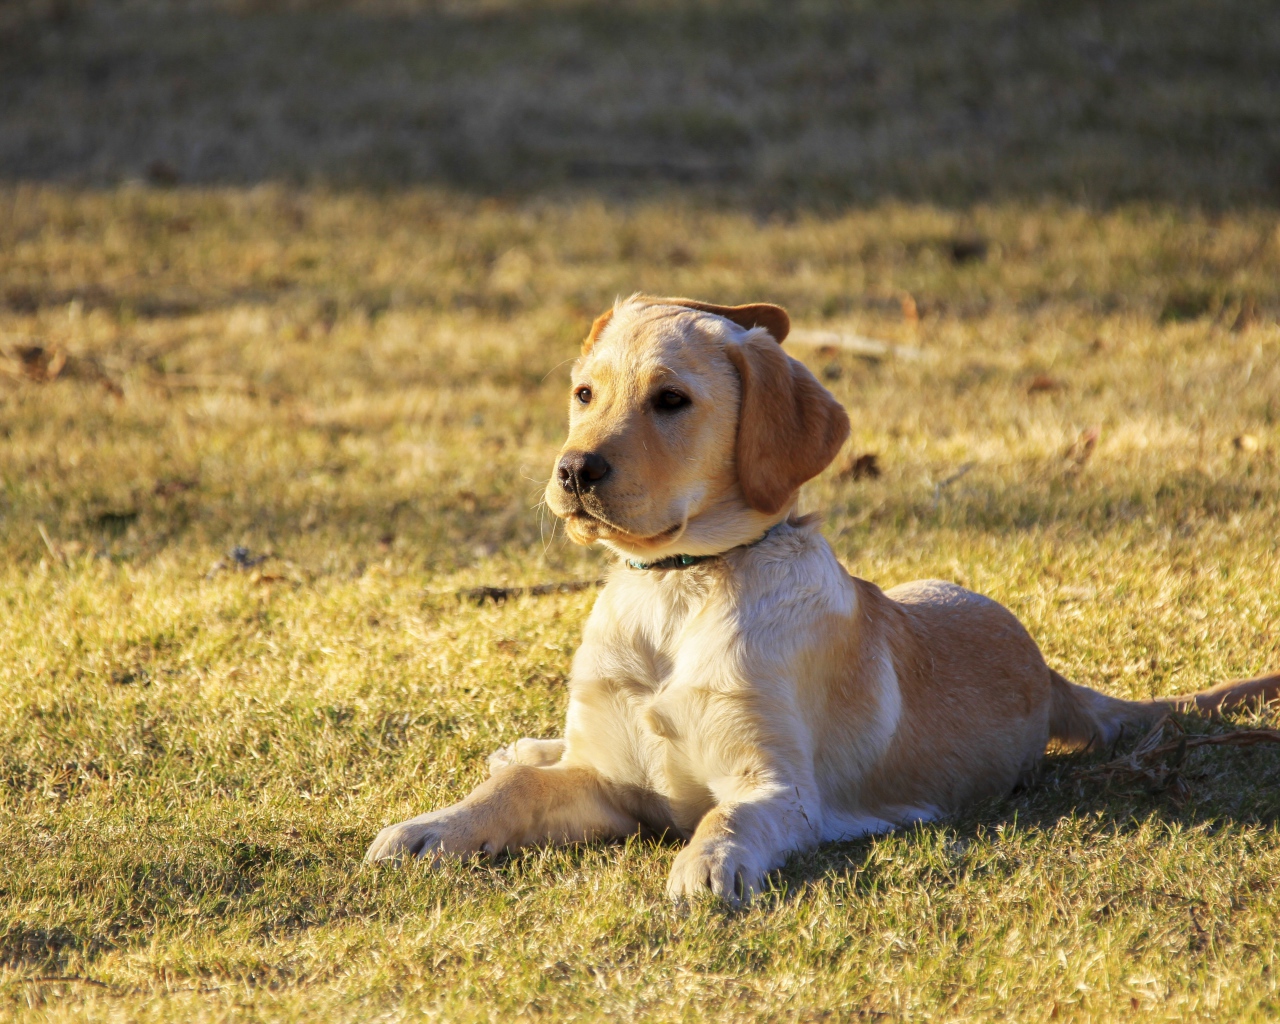 Little golden retriever puppy lying on the grass